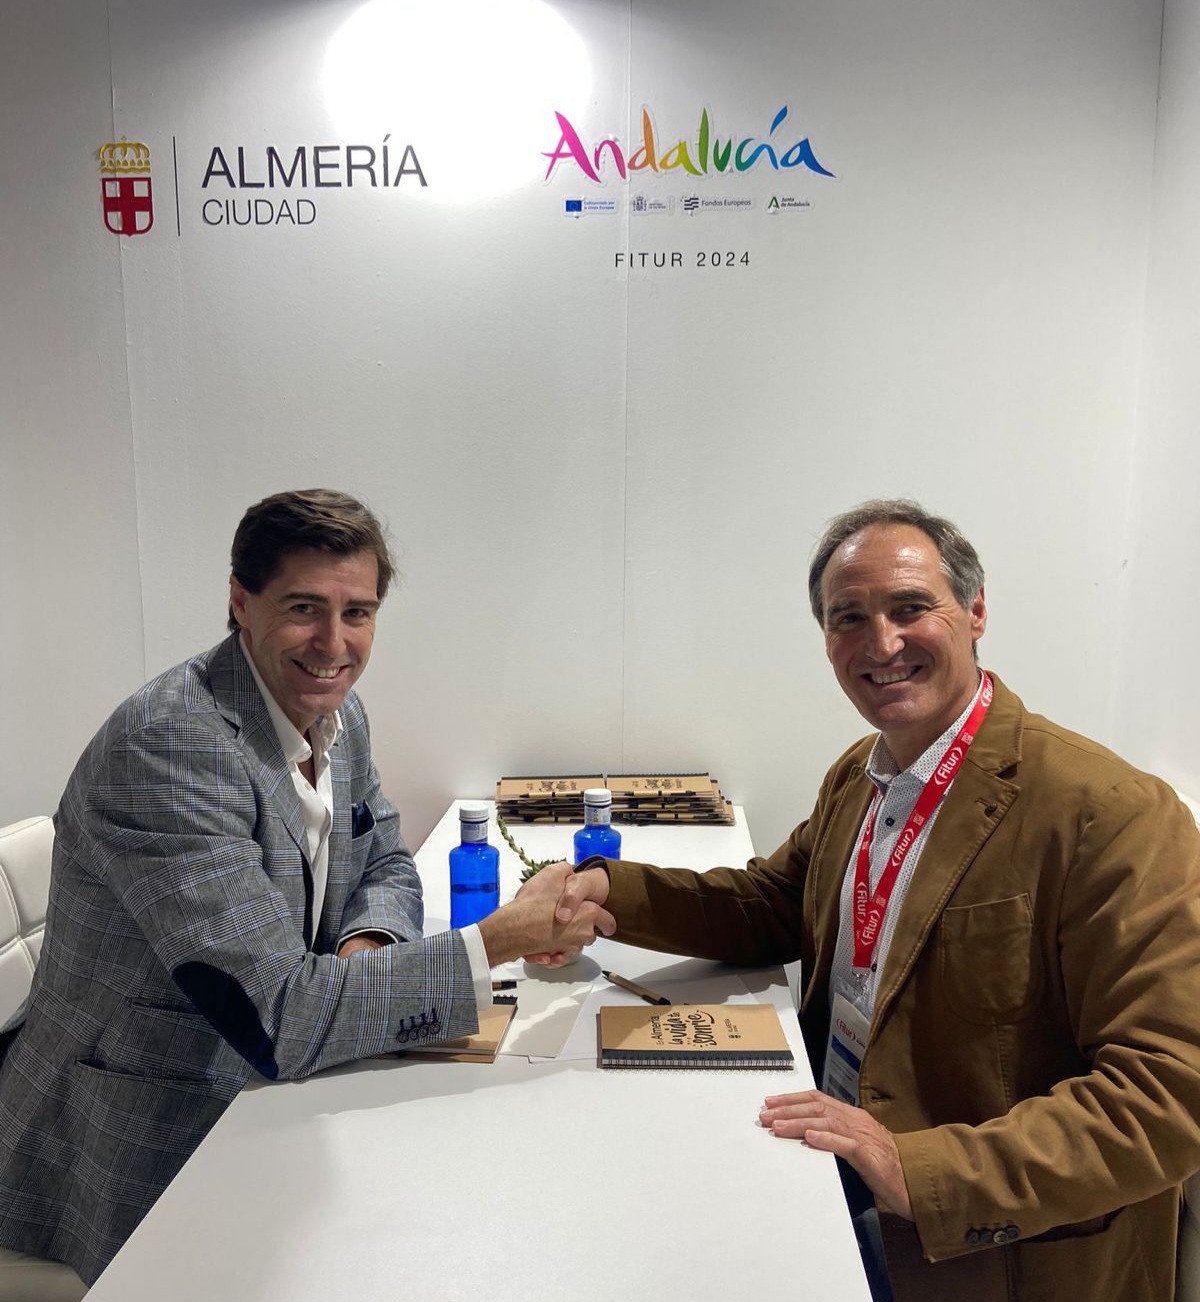 La Real Federación Española de Atletismo y los Ayuntamientos de Almería, Castelló y la Diputación de Palencia firman la declaración de intenciones para obtener la certificación Active Running Cities.